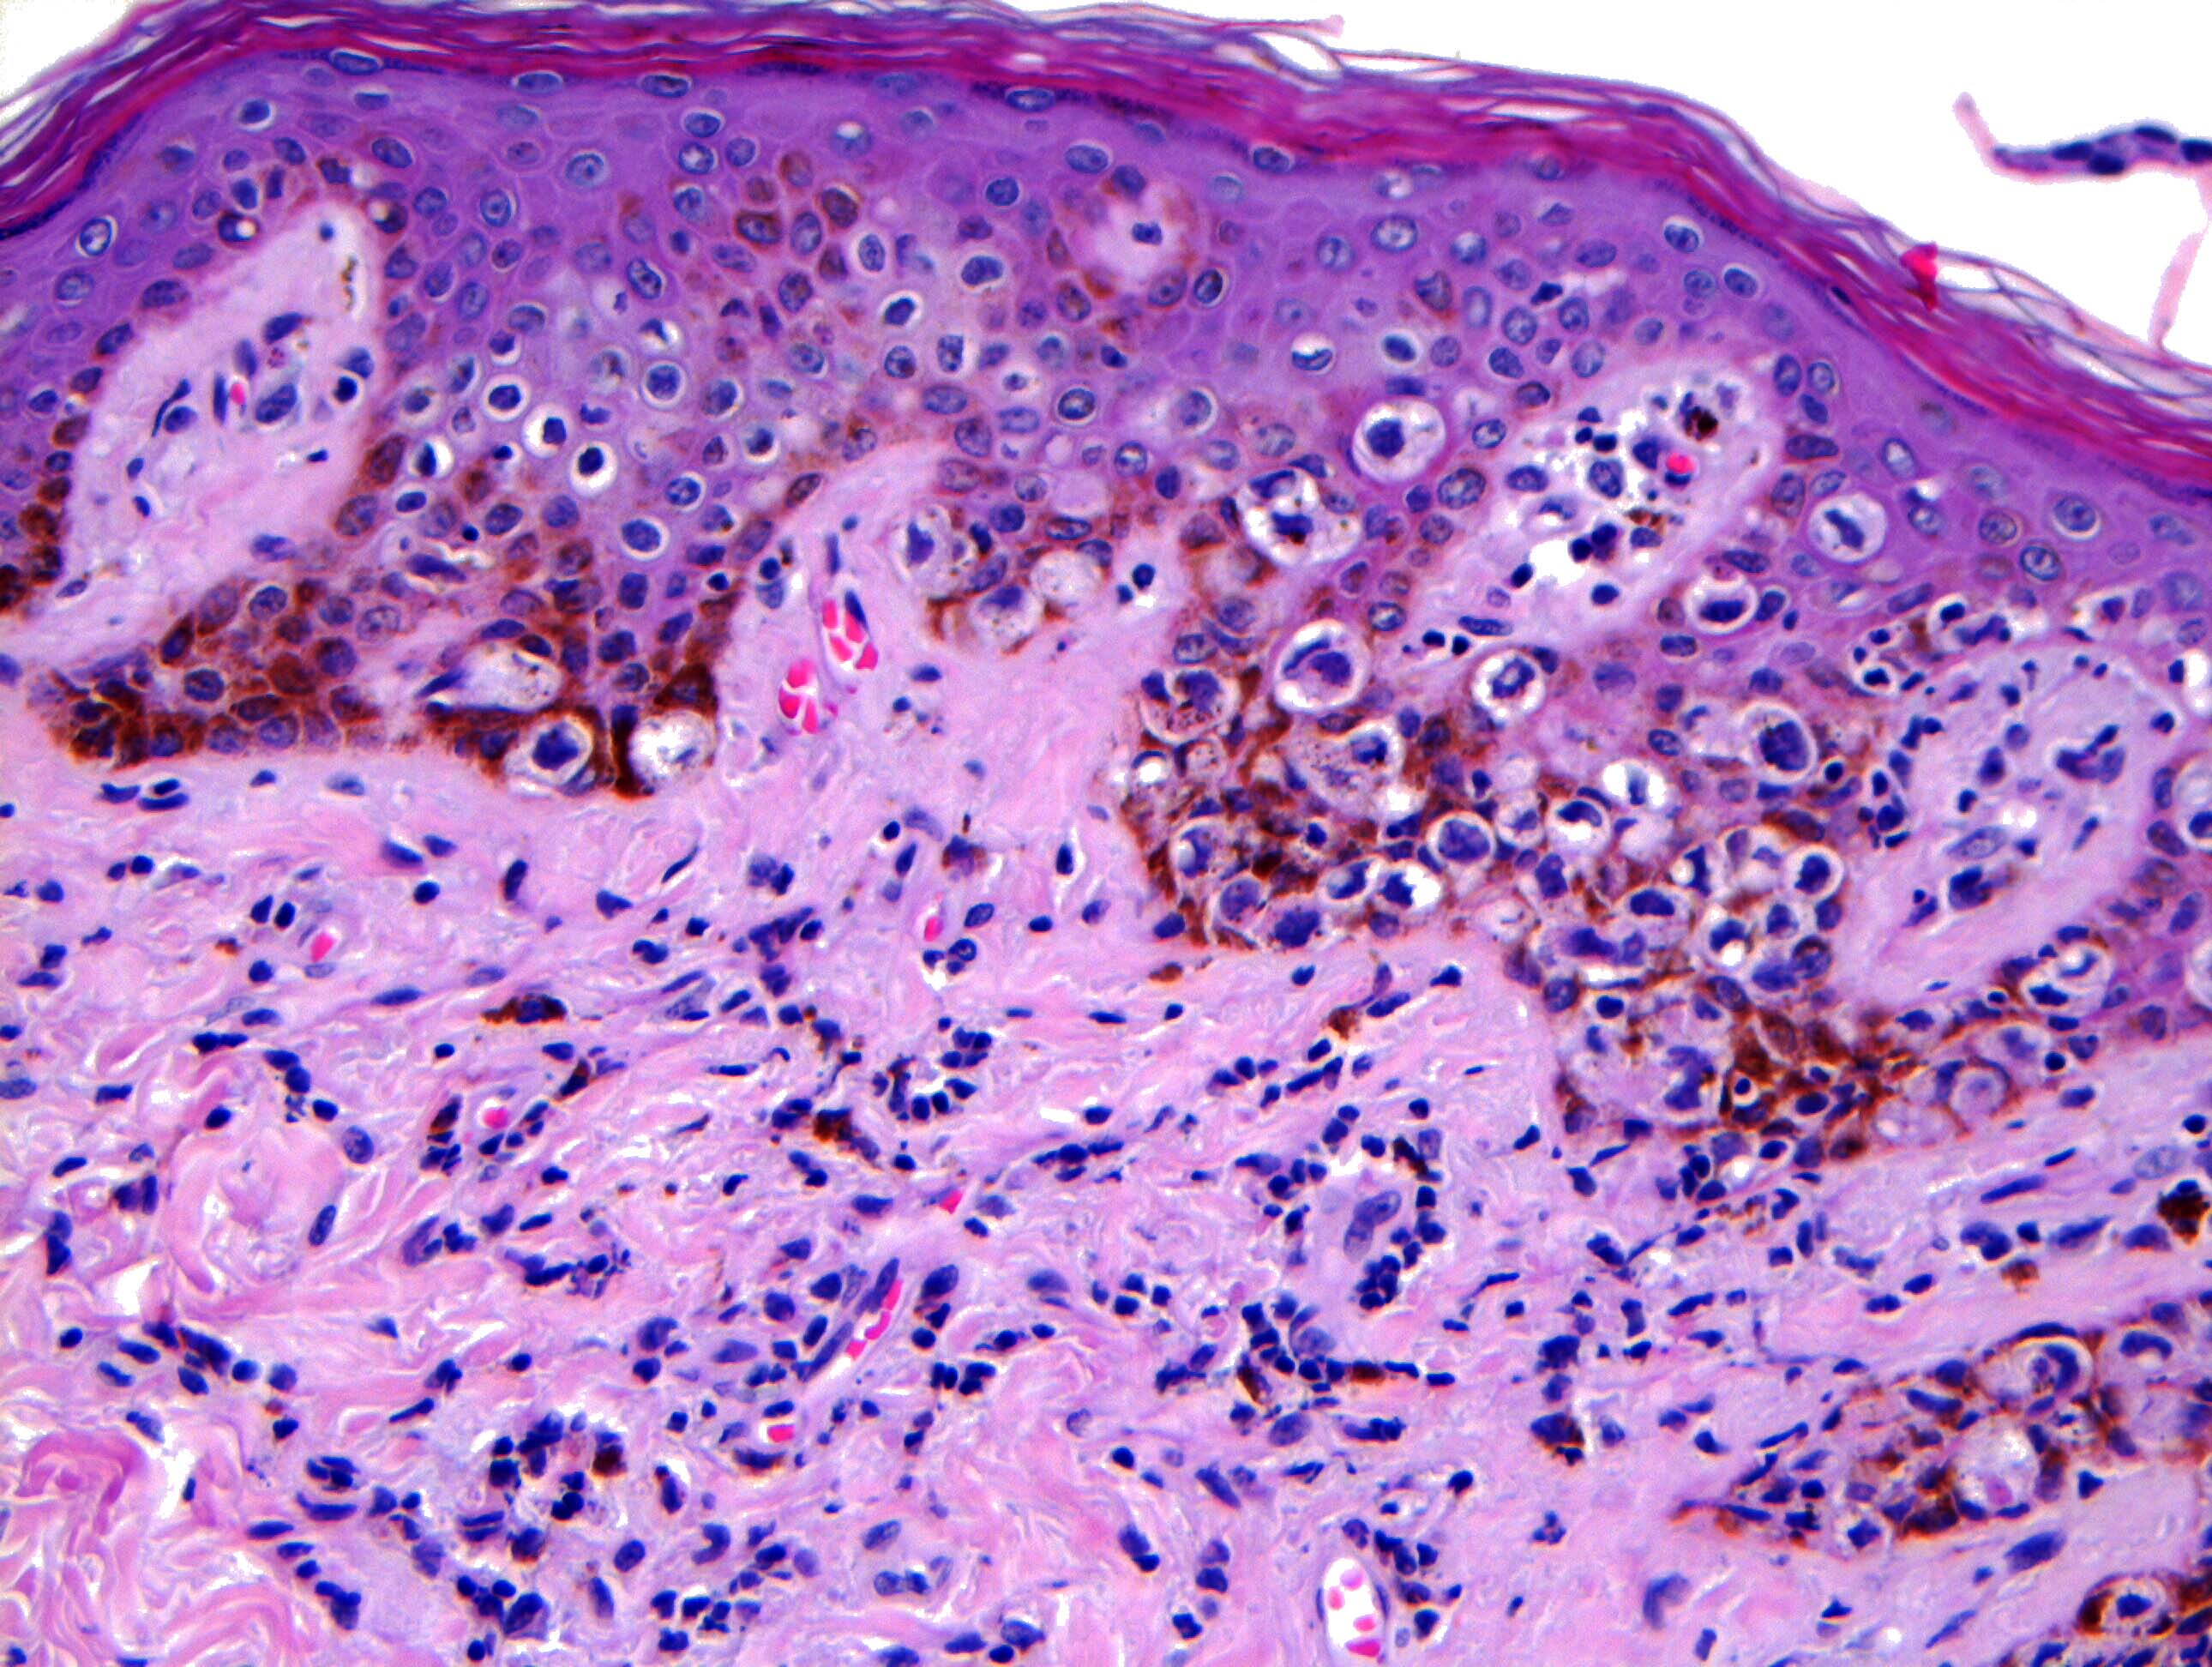 Melanocyte hyperplasia